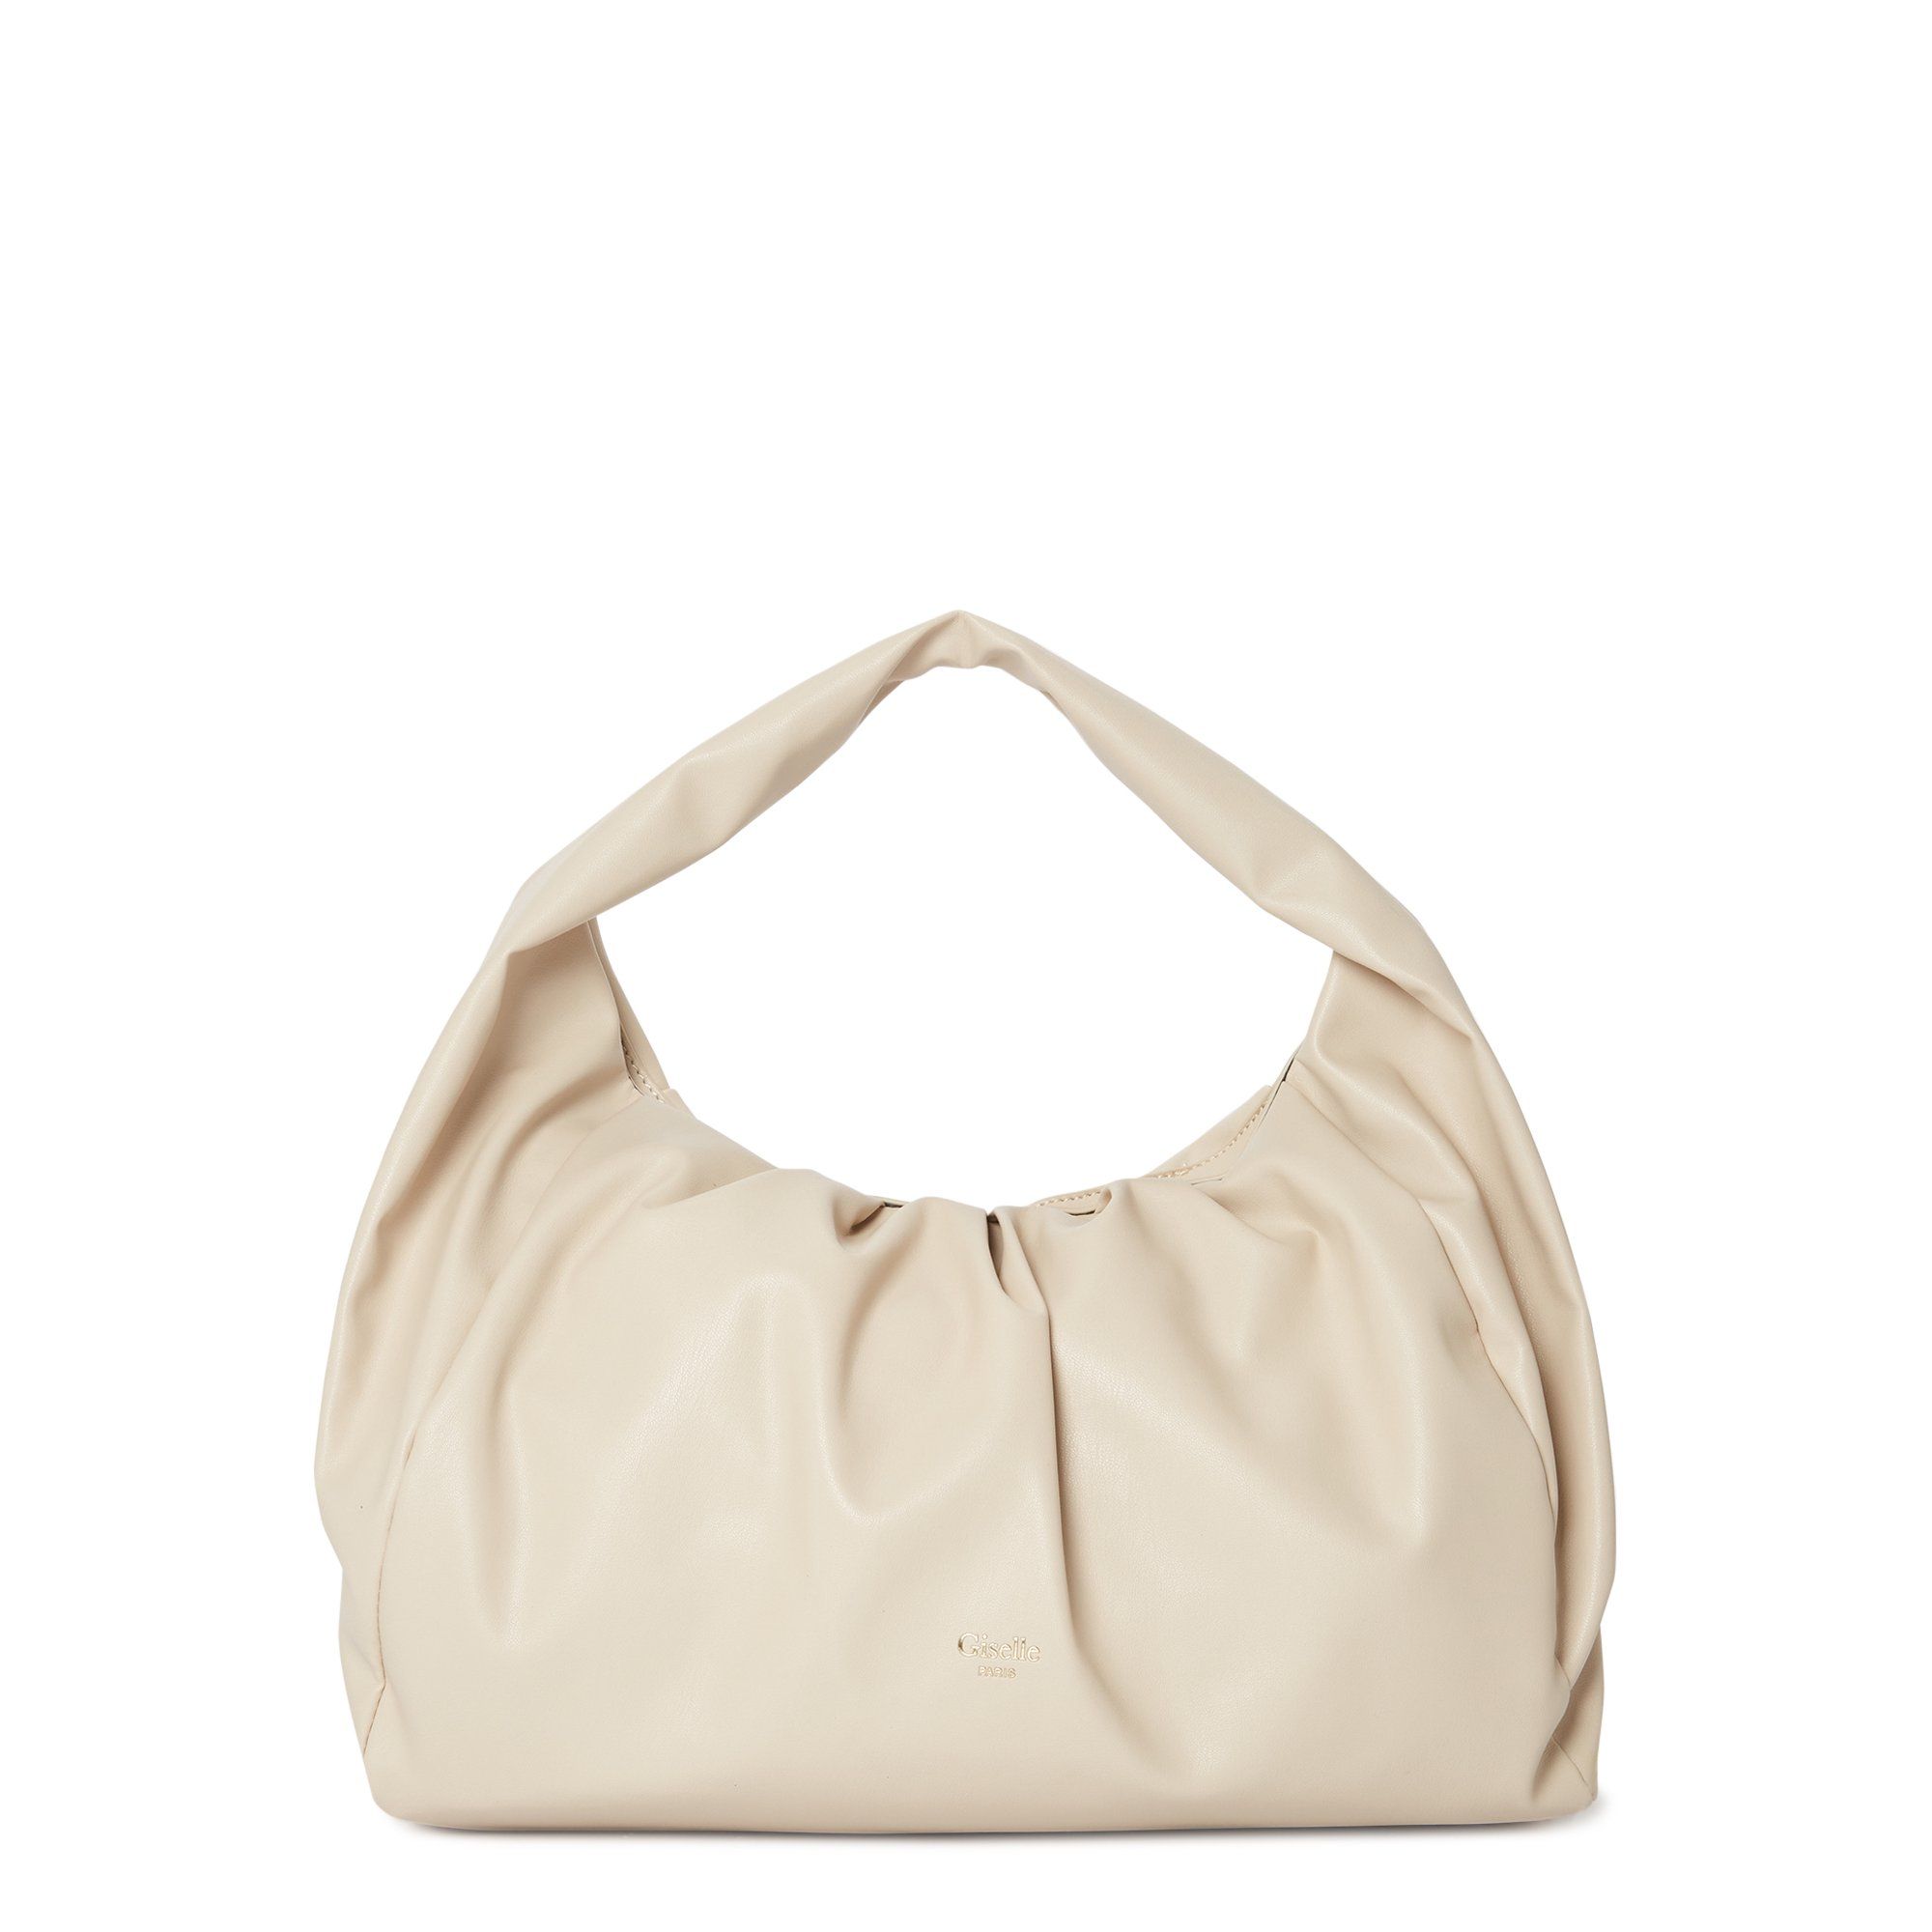 Giselle Paris Women's Adele Vegan Leather Ruched Shoulder Bag | Walmart (US)